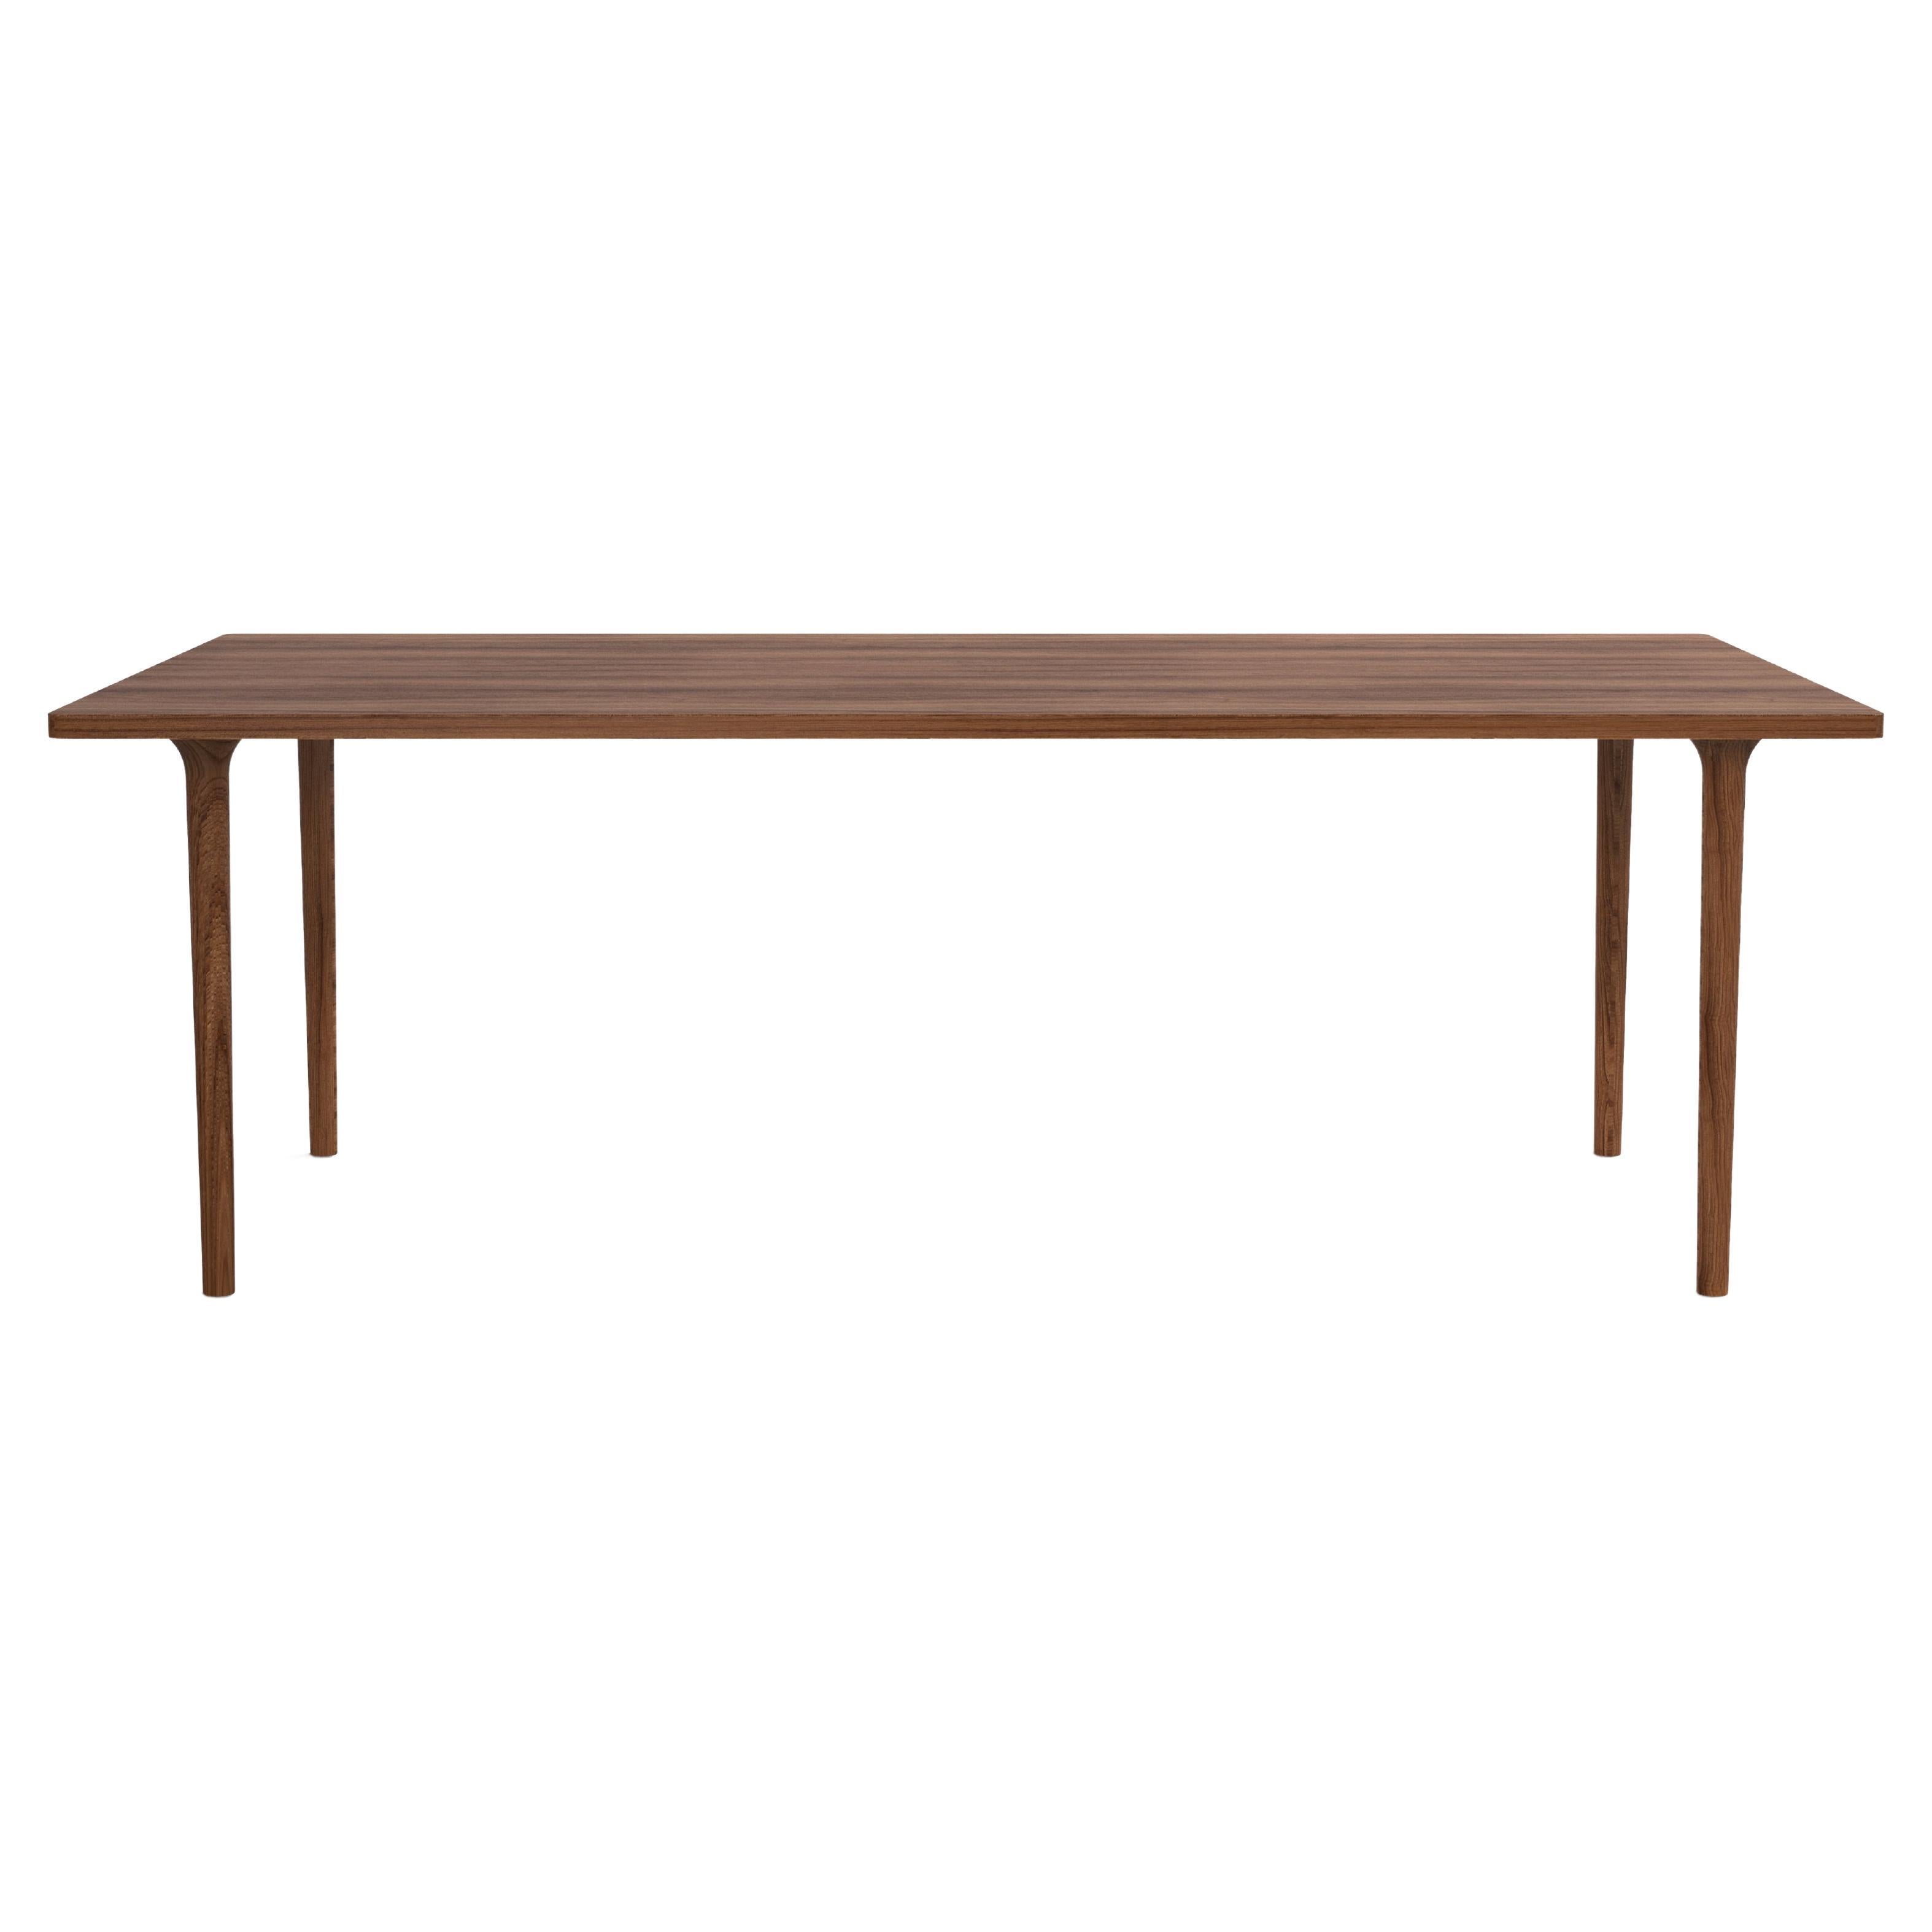 Table moderne minimaliste rectangulaire en bois de noyer